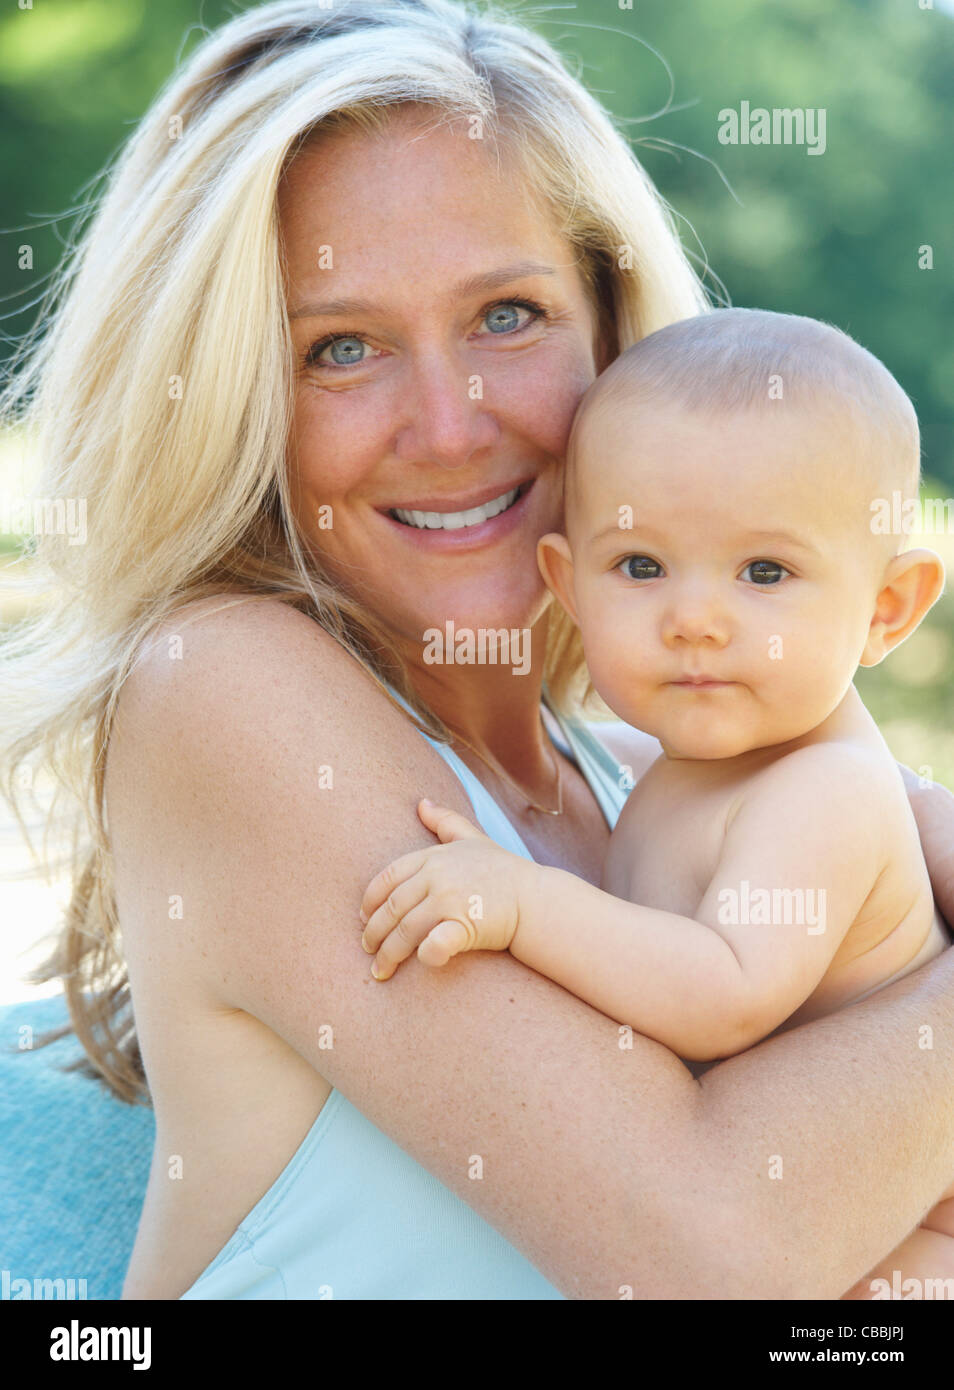 Madre sonriente sosteniendo al bebé al aire libre Foto de stock